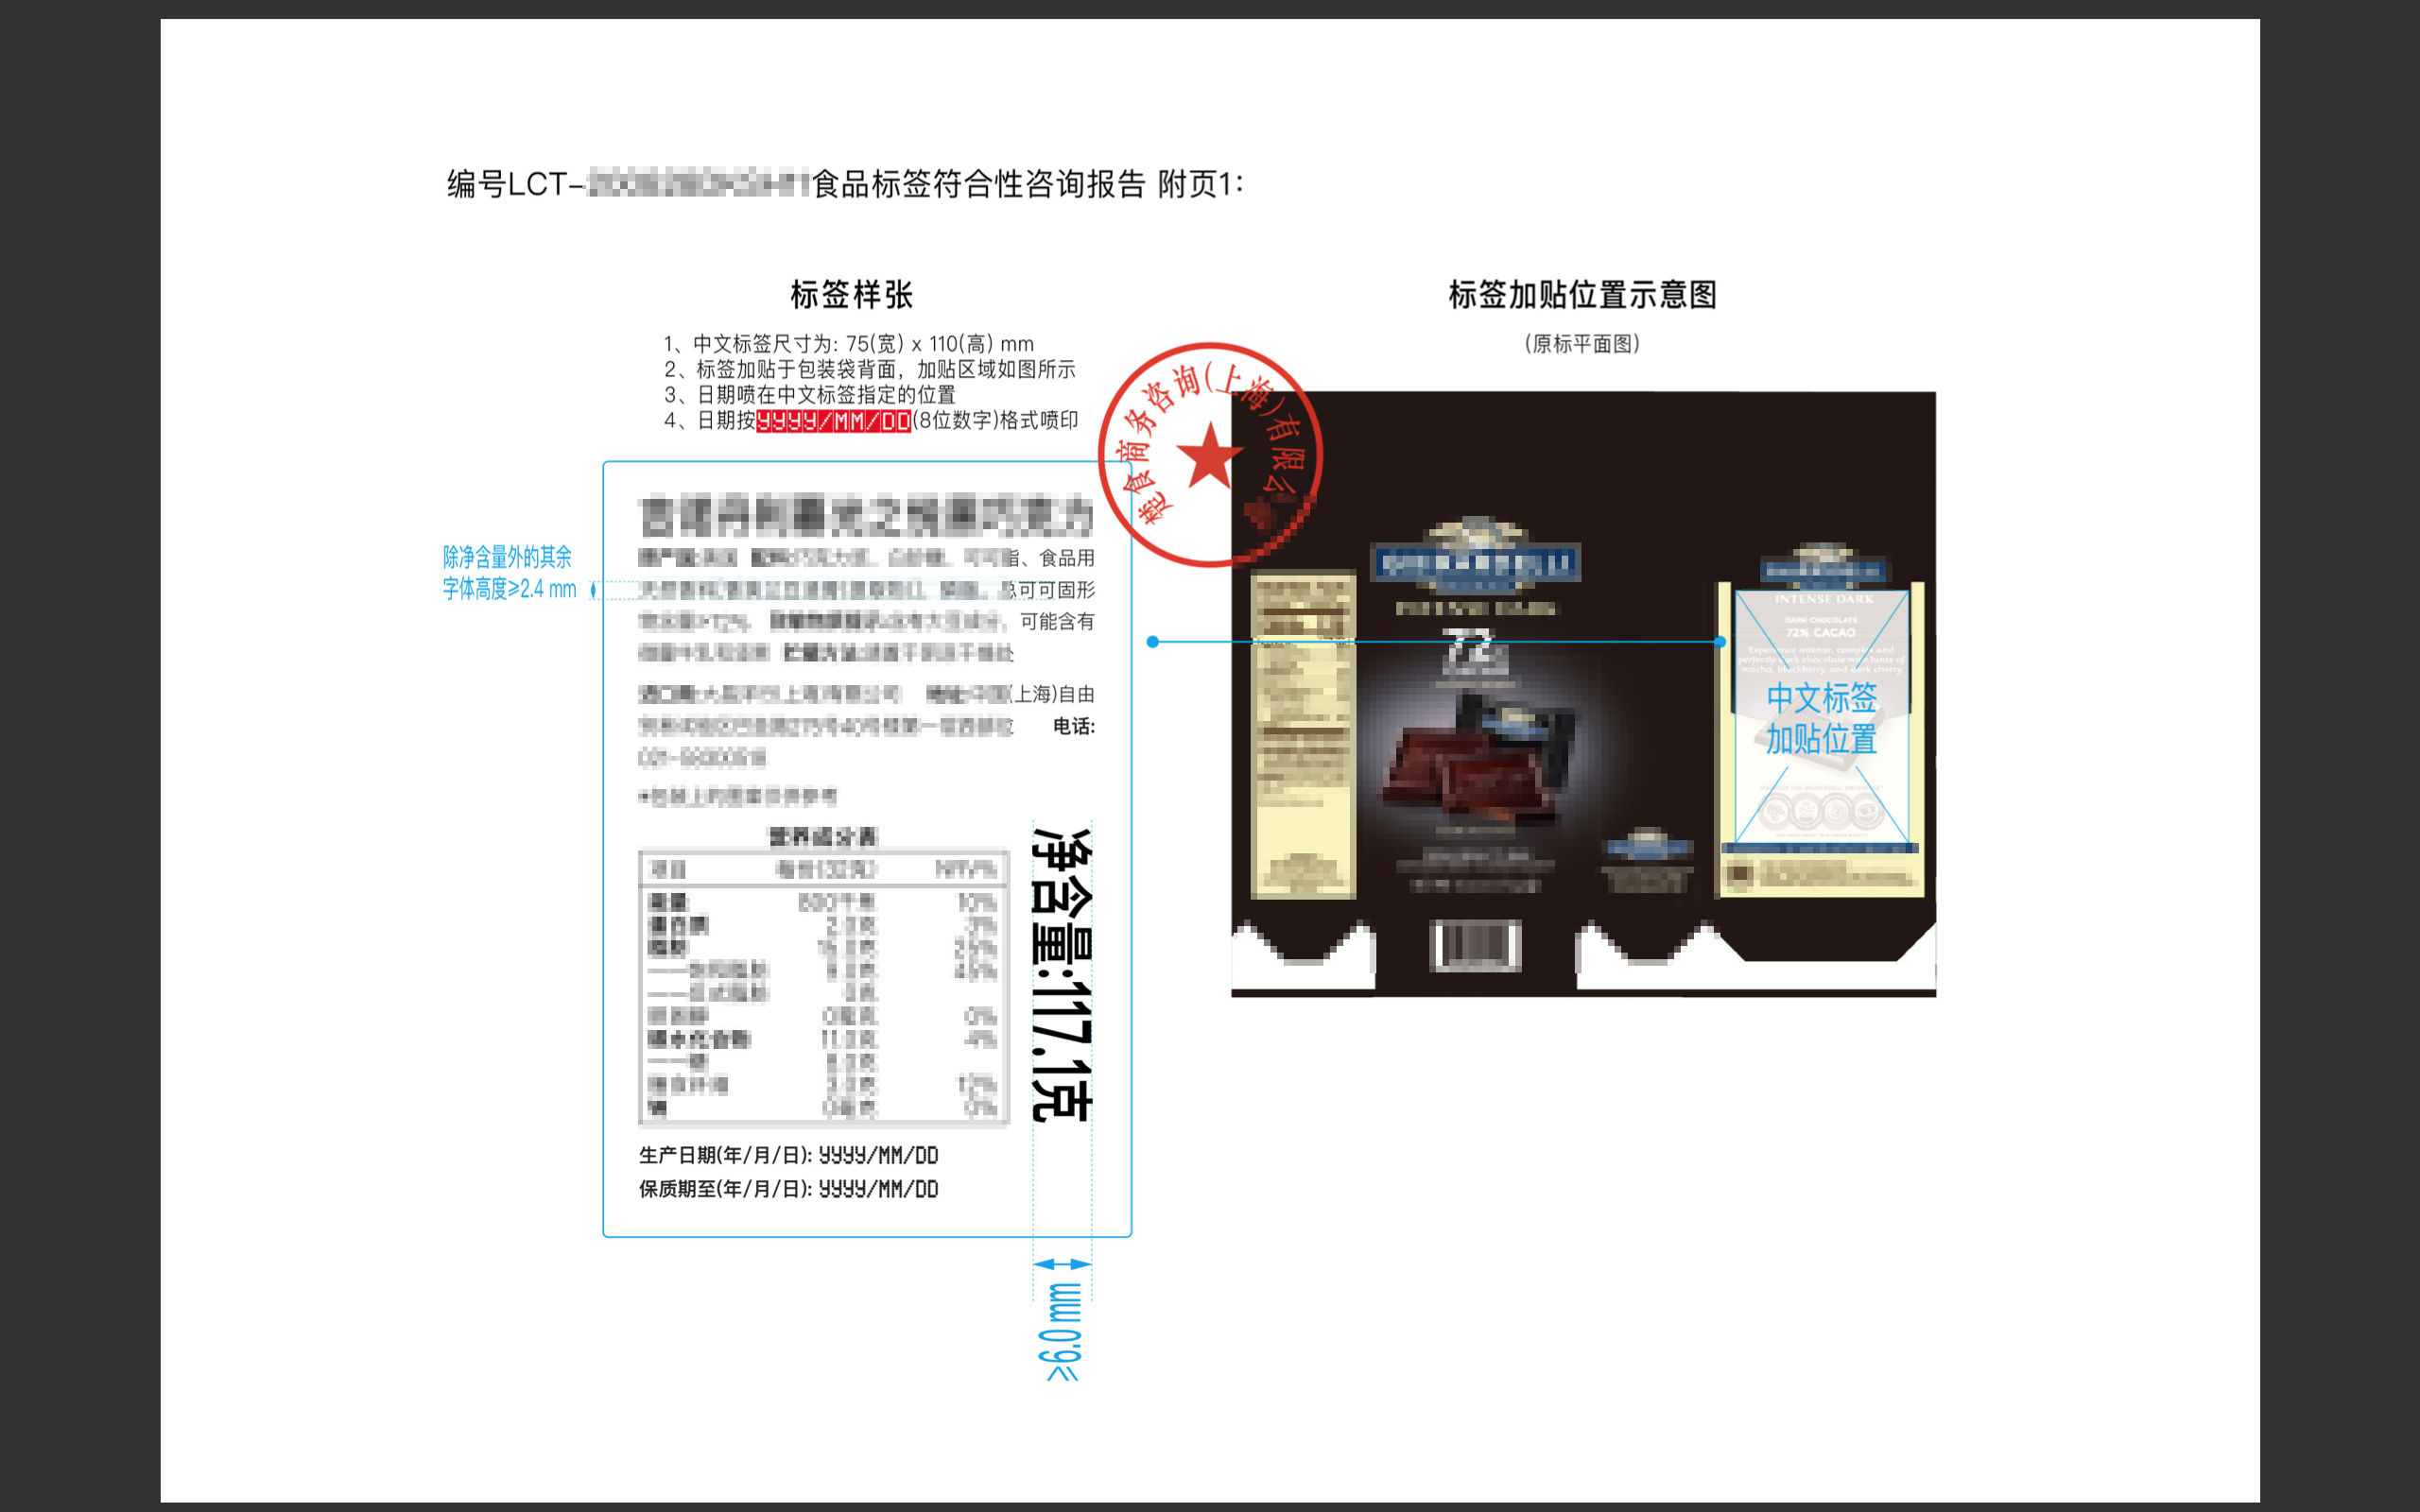 标签咨询报告 第3页中文标签样张+加贴示意图